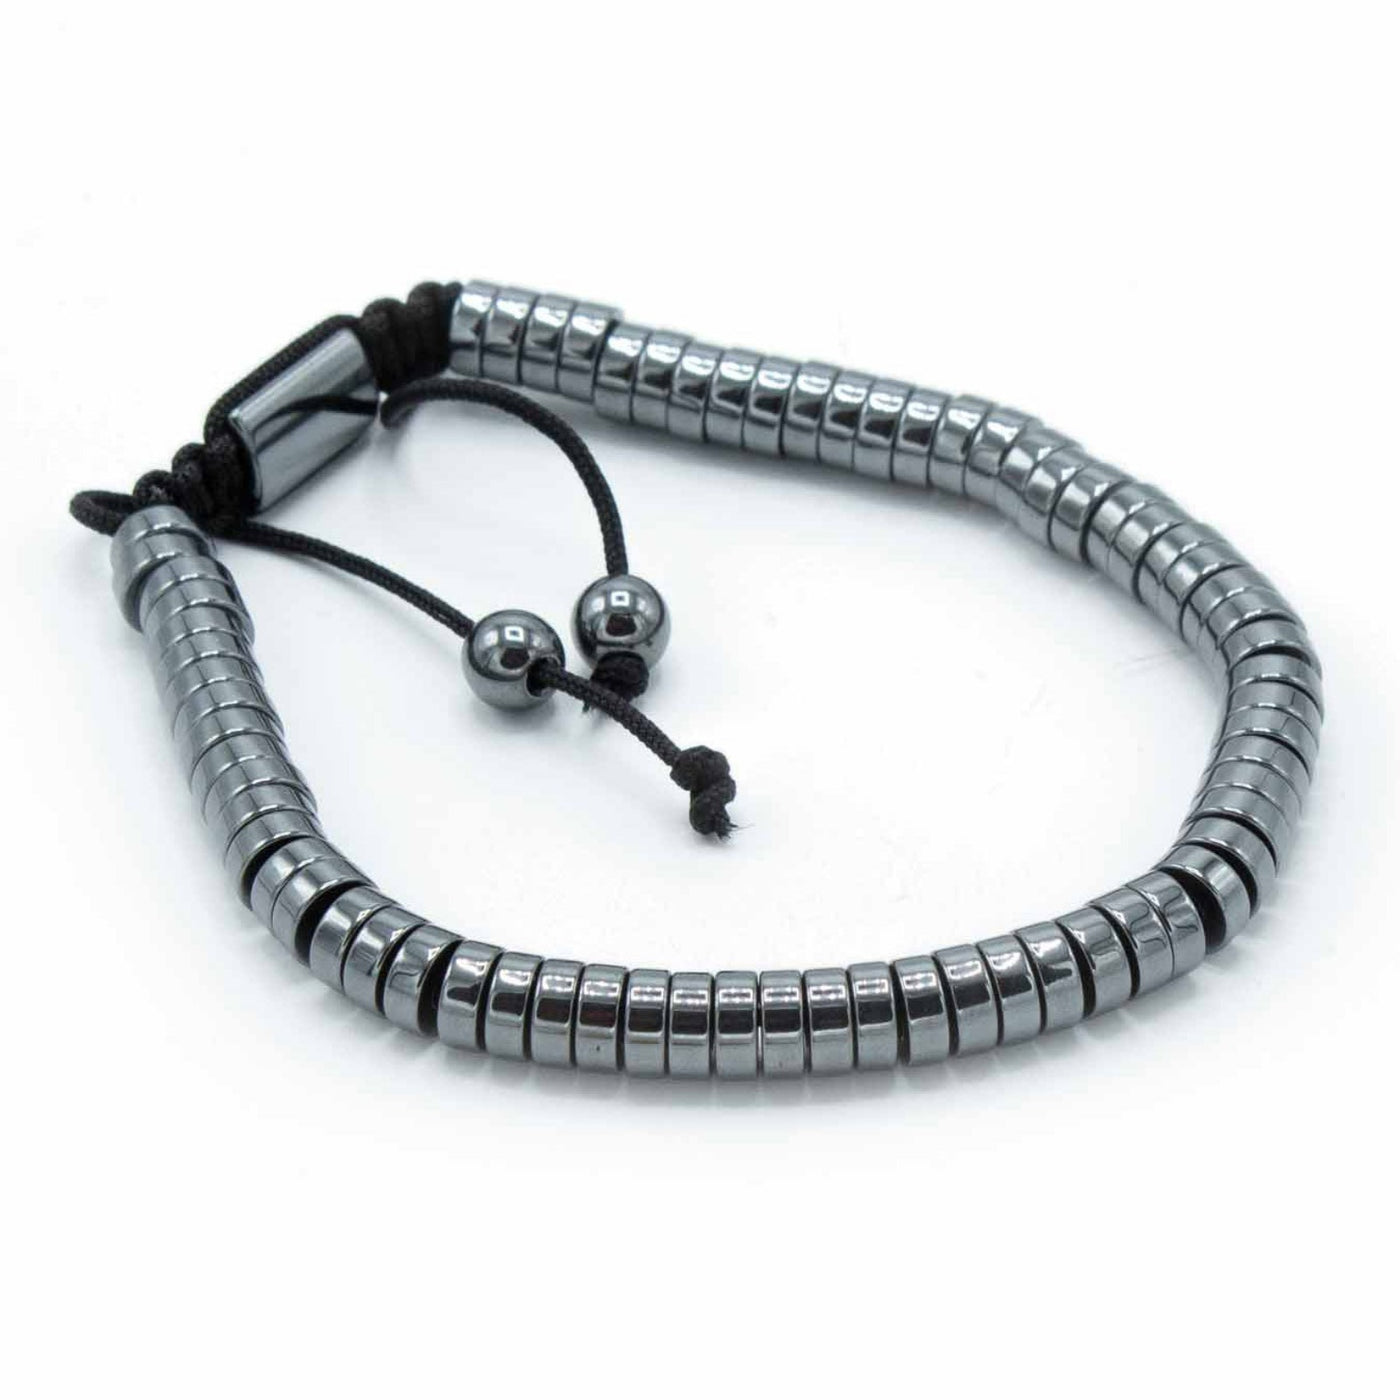 Unisex Hematite Circle Beads Bracelet With Macrame Knot.